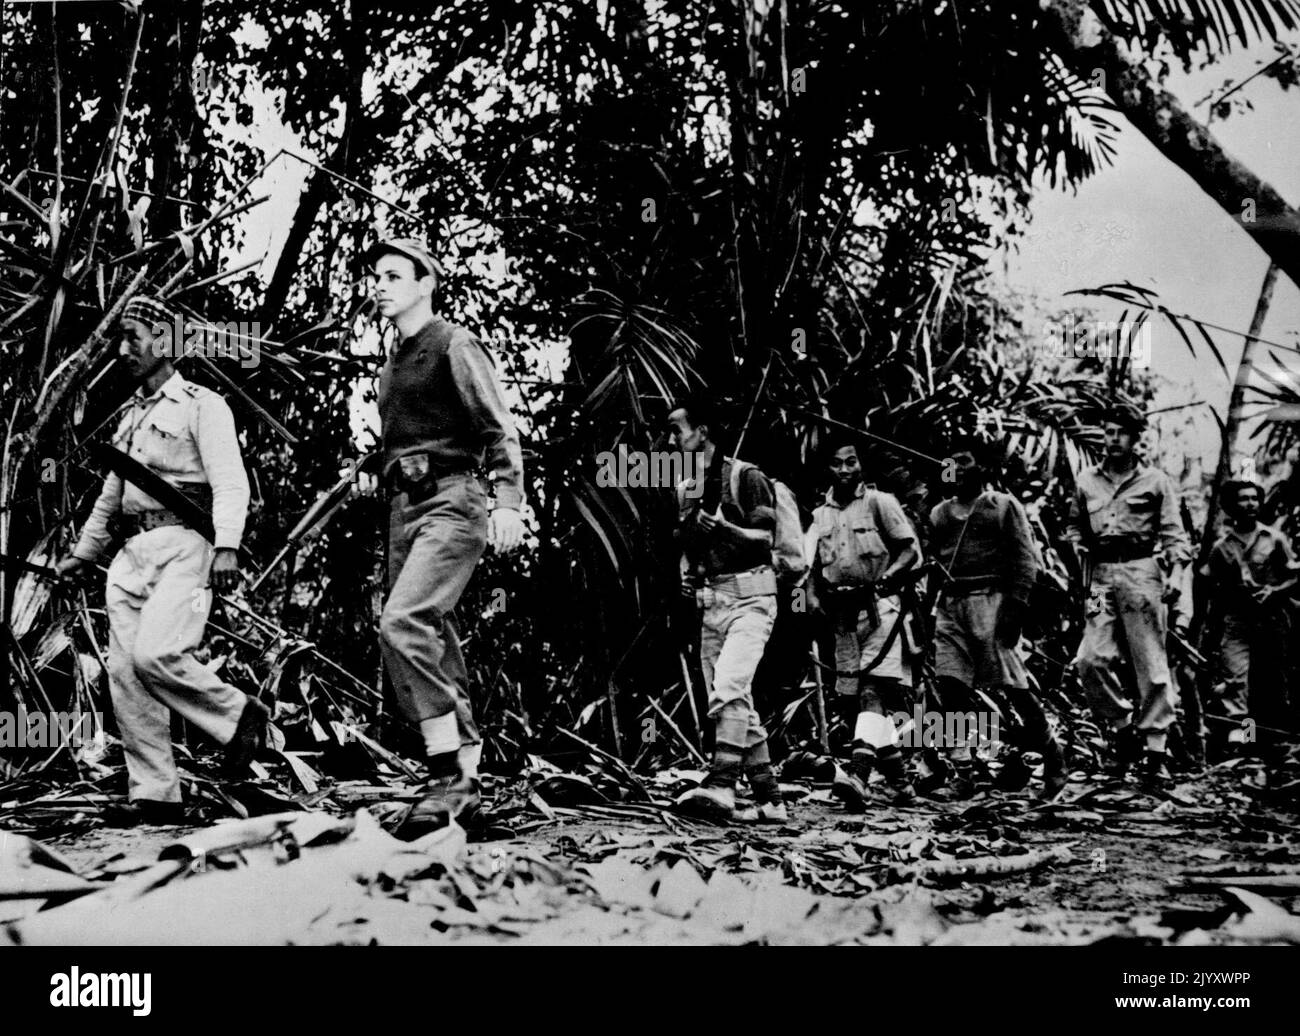 U. S. Offizier führt Pfadfinder im Burma-Dschungel -- in der Warnung vor japanischen Scharfschützen wird eine Patrouille von US-Soldaten und burmesischen Patriot-Kämpfern, Mitgliedern einer Pfadfindereinheit der Alliierten 14.-Armee, von einem US-Armeeoffizier über einen Dschungelpfad in Nord-Burma geführt. Amerikanische, britische und chinesische Soldaten und burmesische Patrioten bilden die Pfadfindertruppen, die japanische Ziele lokalisieren, über feindliche Bewegungen berichten und als Führer für alliierte Truppen im Feldzug gegen die Japaner im Norden Burmas dienen. 06. April 1944. Stockfoto